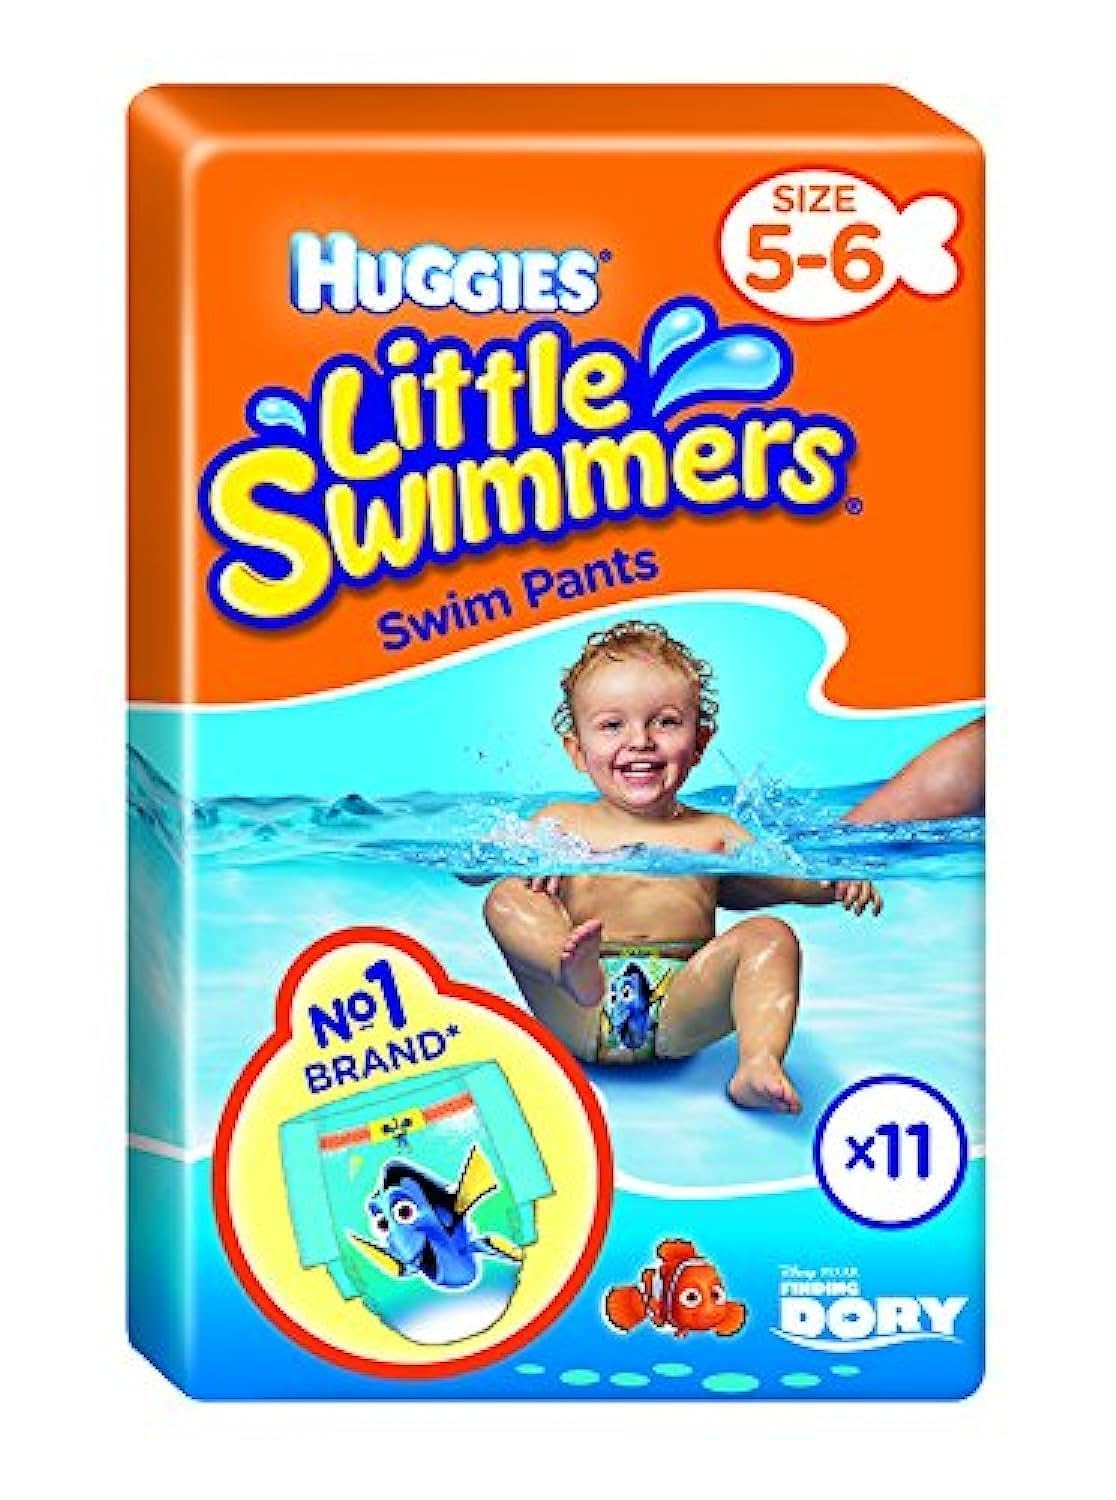 huggies little swimmers lublin